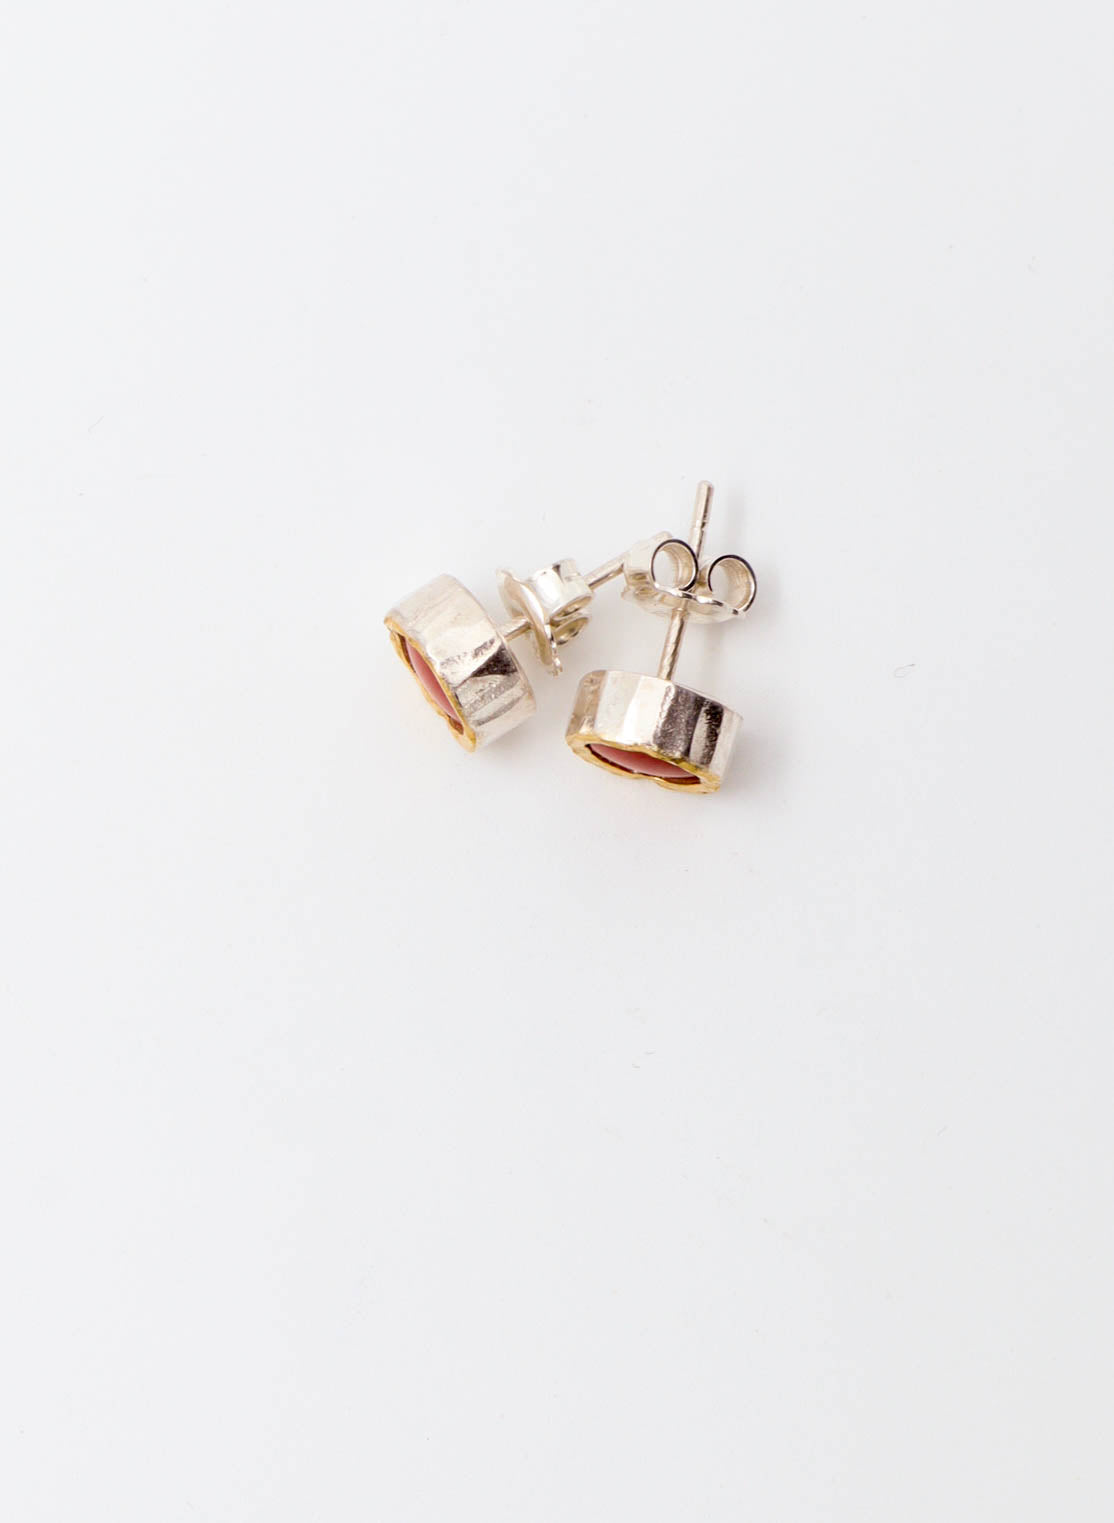 Australian Rhodinite Stud Earrings - 9ct Gold &amp; Sterling Silver